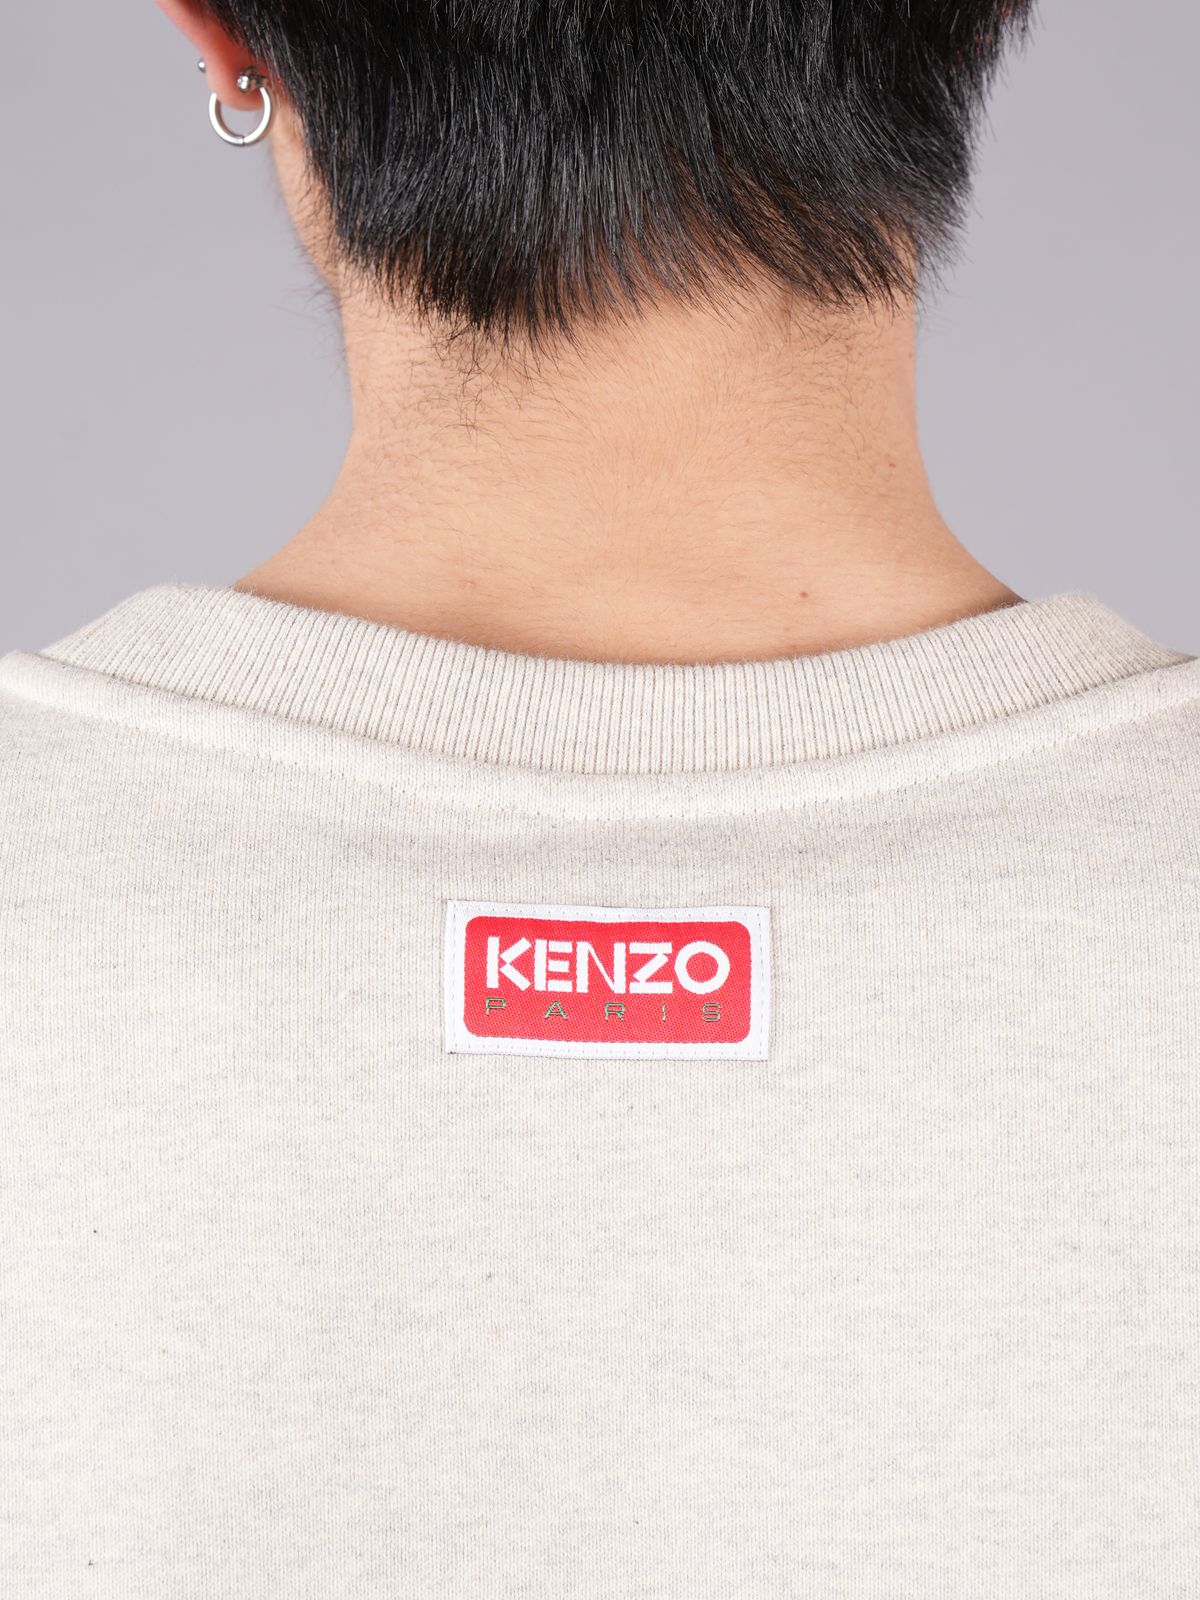 KENZO - 【ラスト1点】 BOKE FLOWER SWEATSHIRT / ボケフラワー